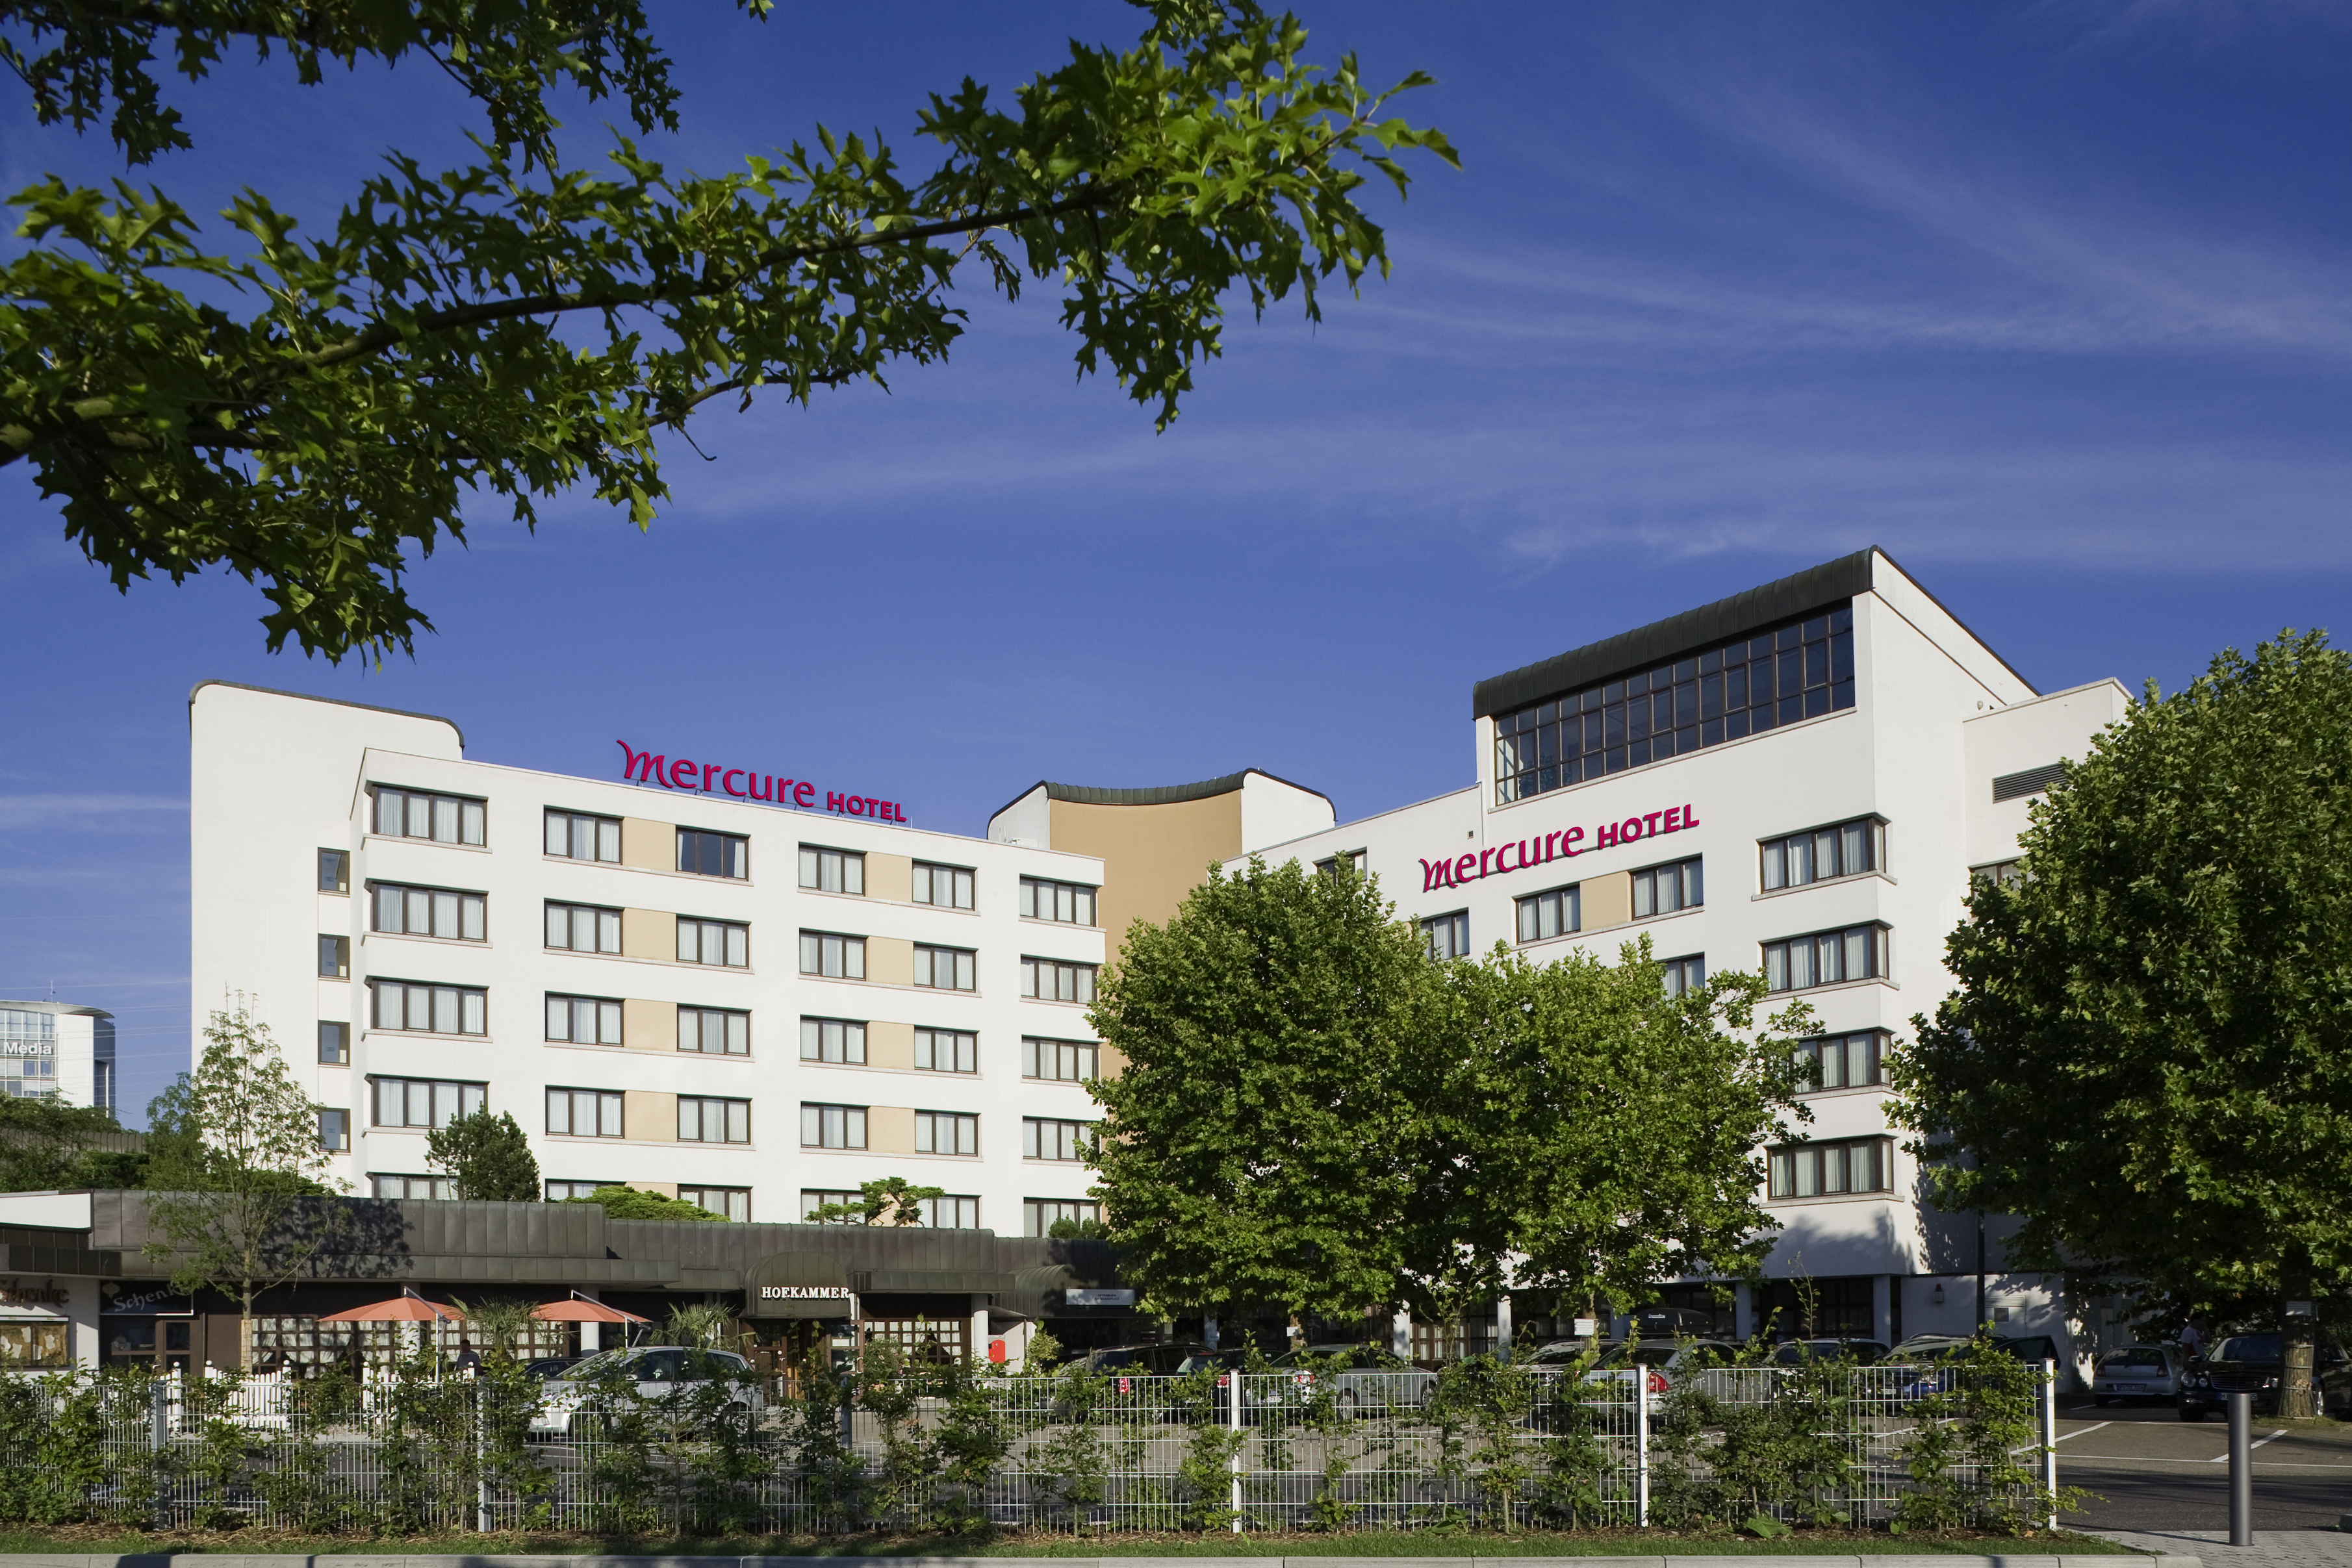 Mercure Hotel Offenburg am Messeplatz in Offenburg bei Sundheim